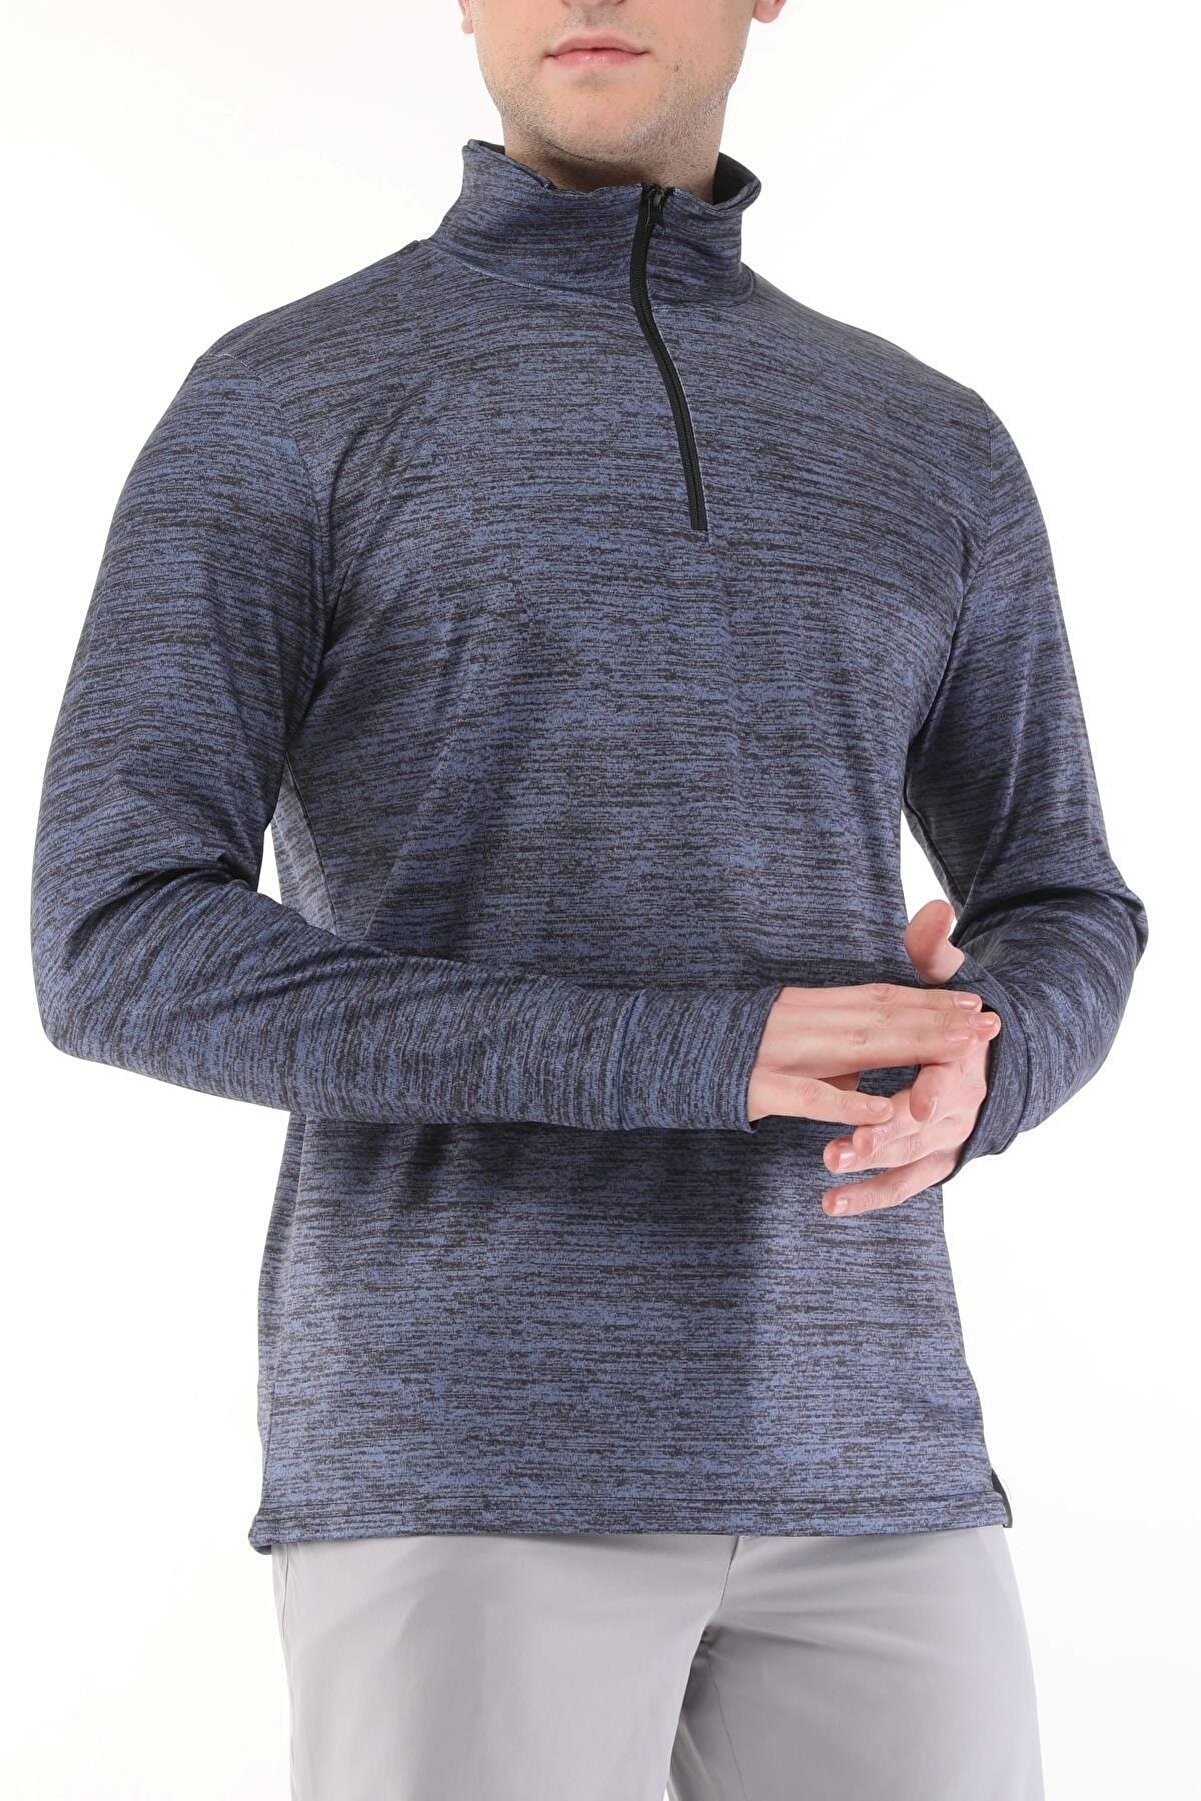 Ghassy Co. Erkek Running Nem Emici UV Güneşten Koruma Parmaklık Detaylı Uzun Kollu Outdoor Tshirt - LACİVERT